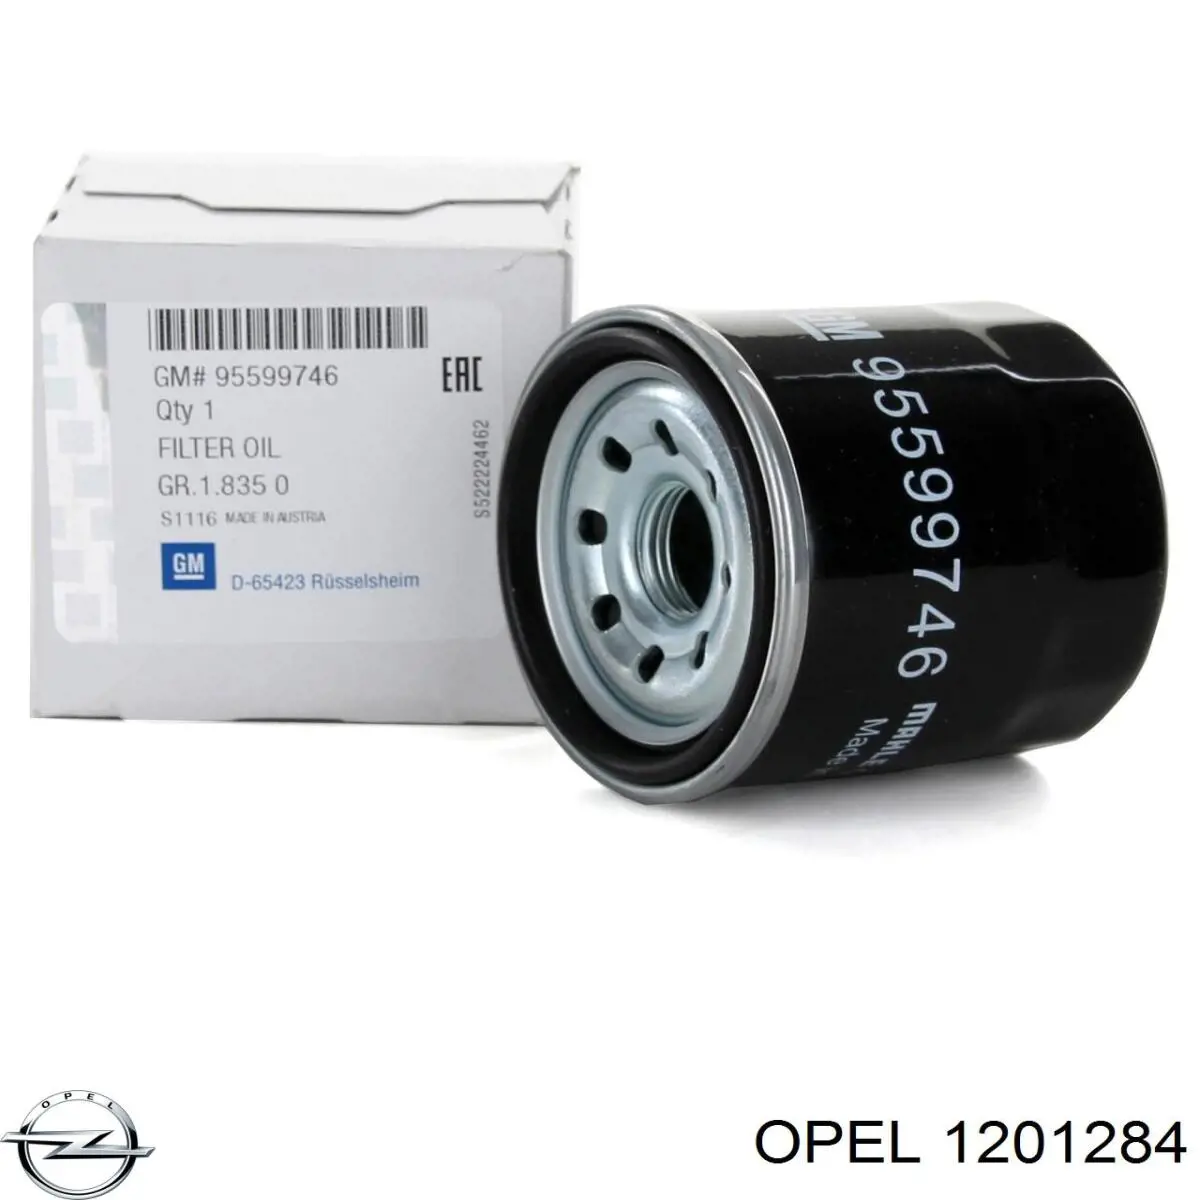 Batería de Arranque Opel (1201284)